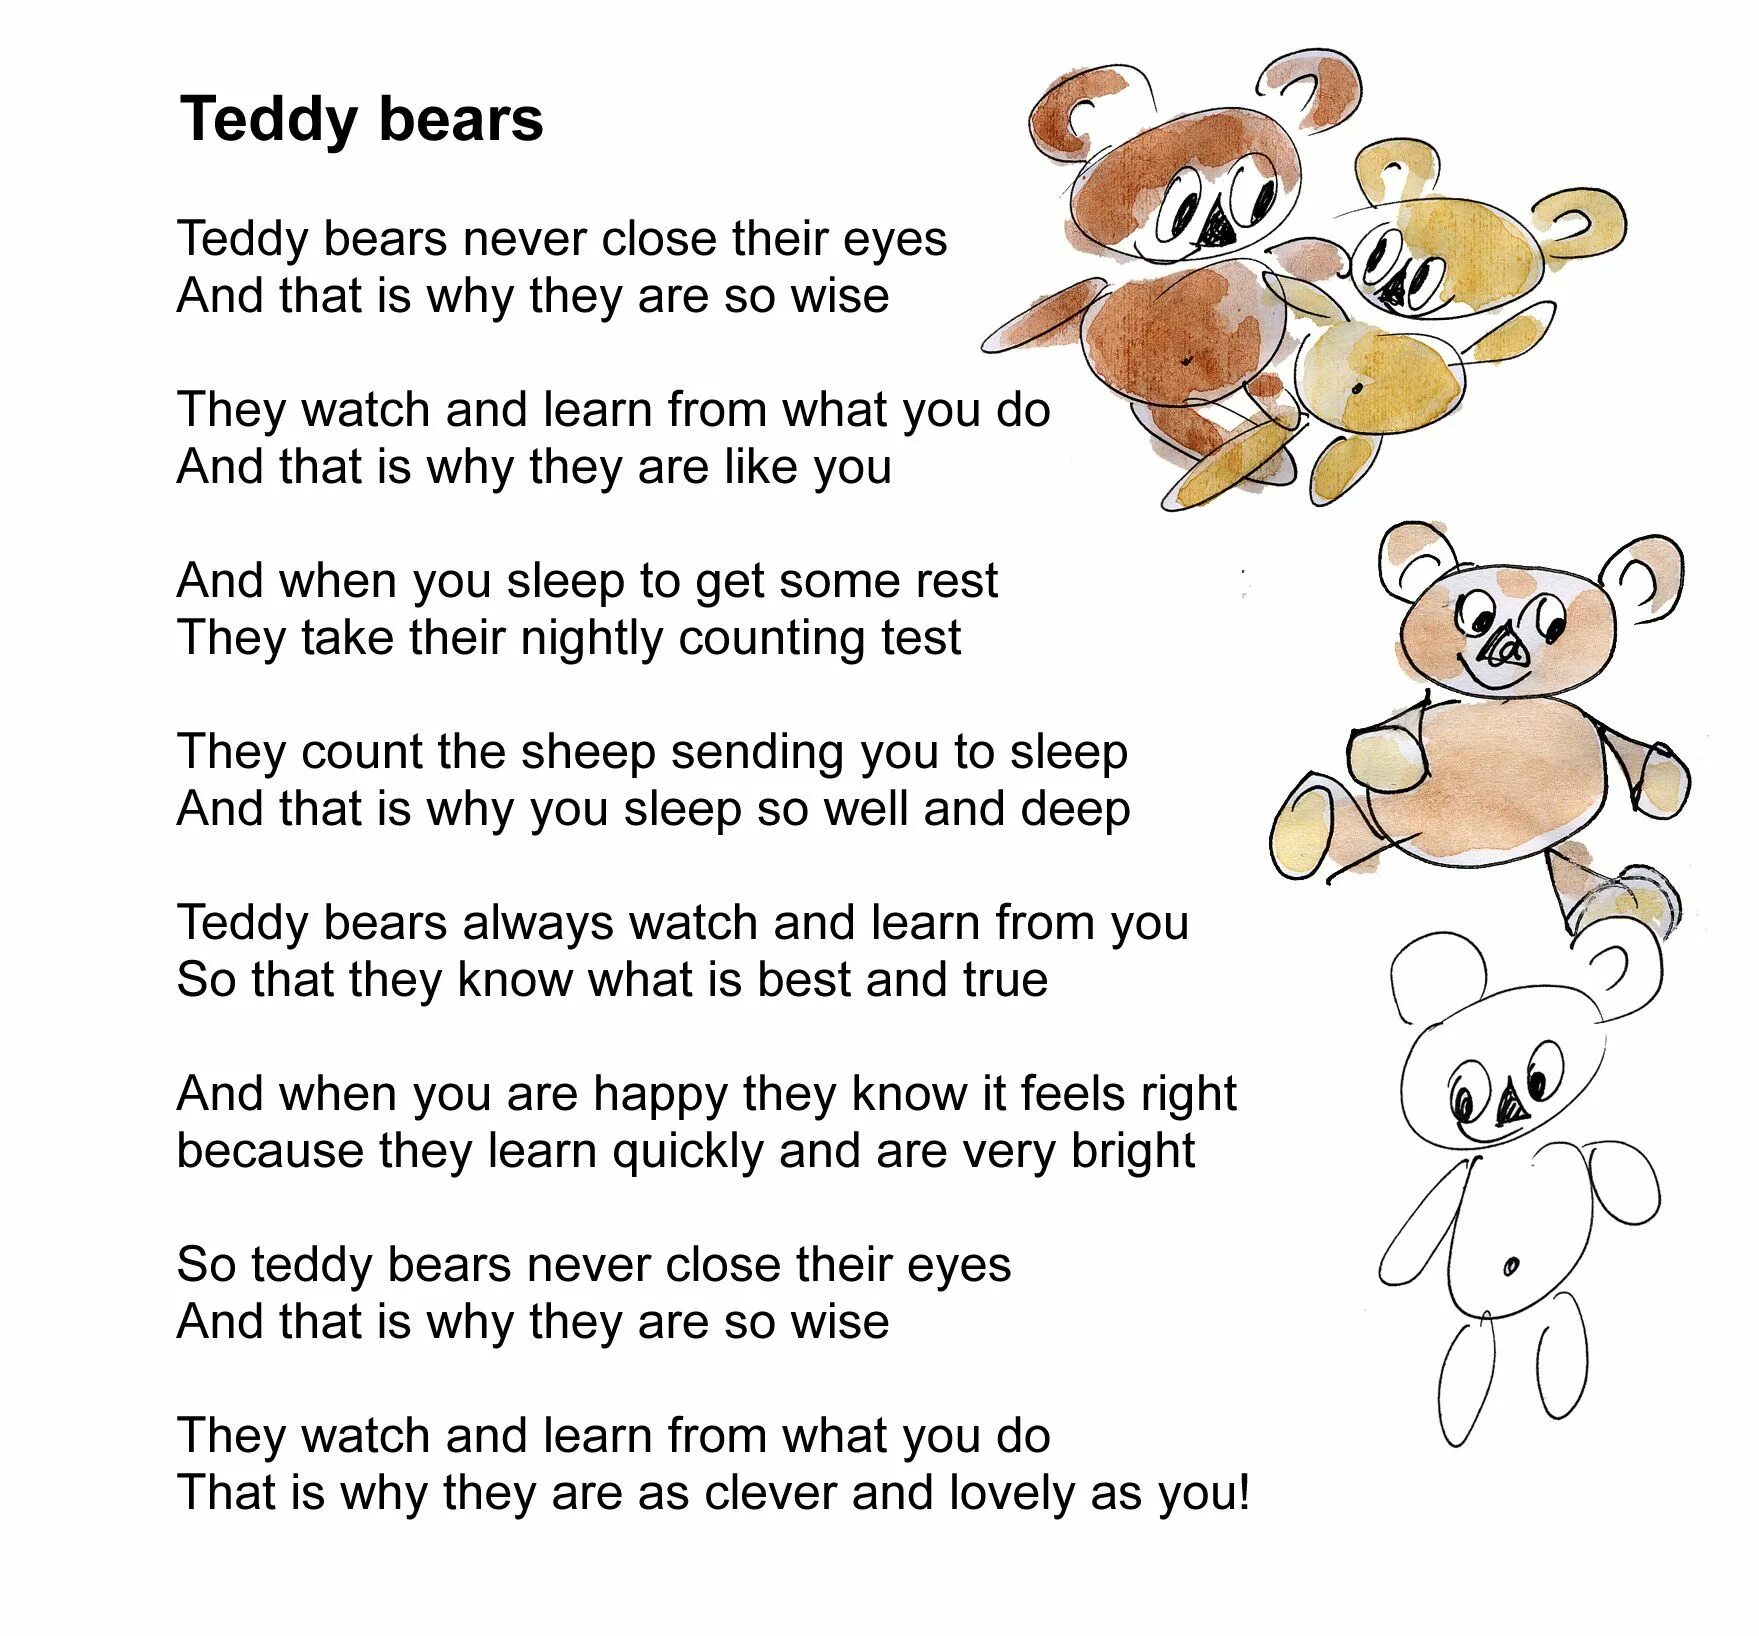 My Teddy Bear стих. Стих на английском my Teddy Bear. Стихотворение про медвежонка Тедди на английском языке. Teddy на английском языке.